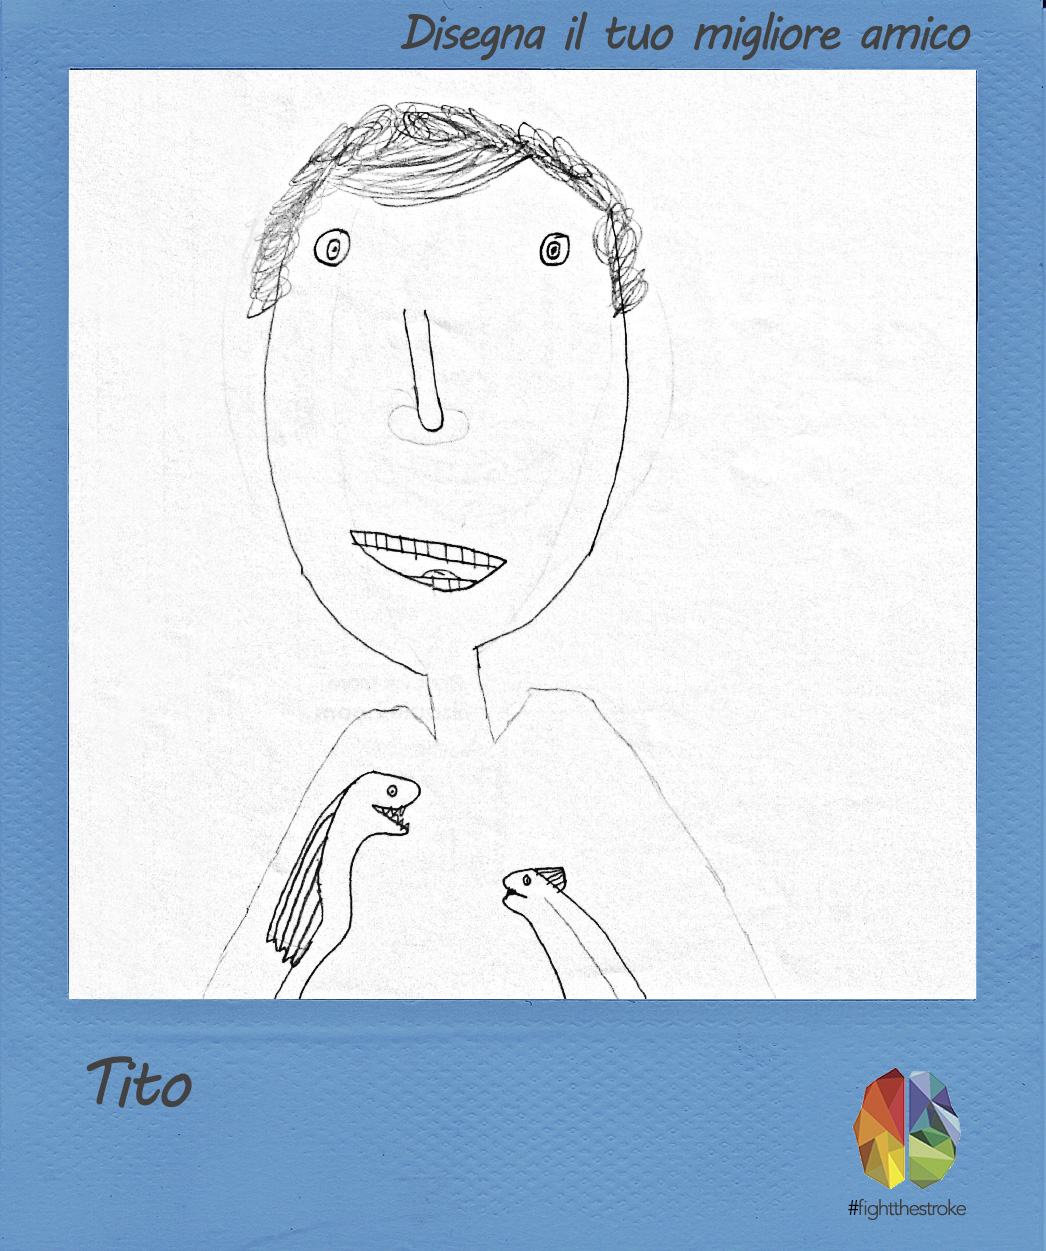 Tito.jpg